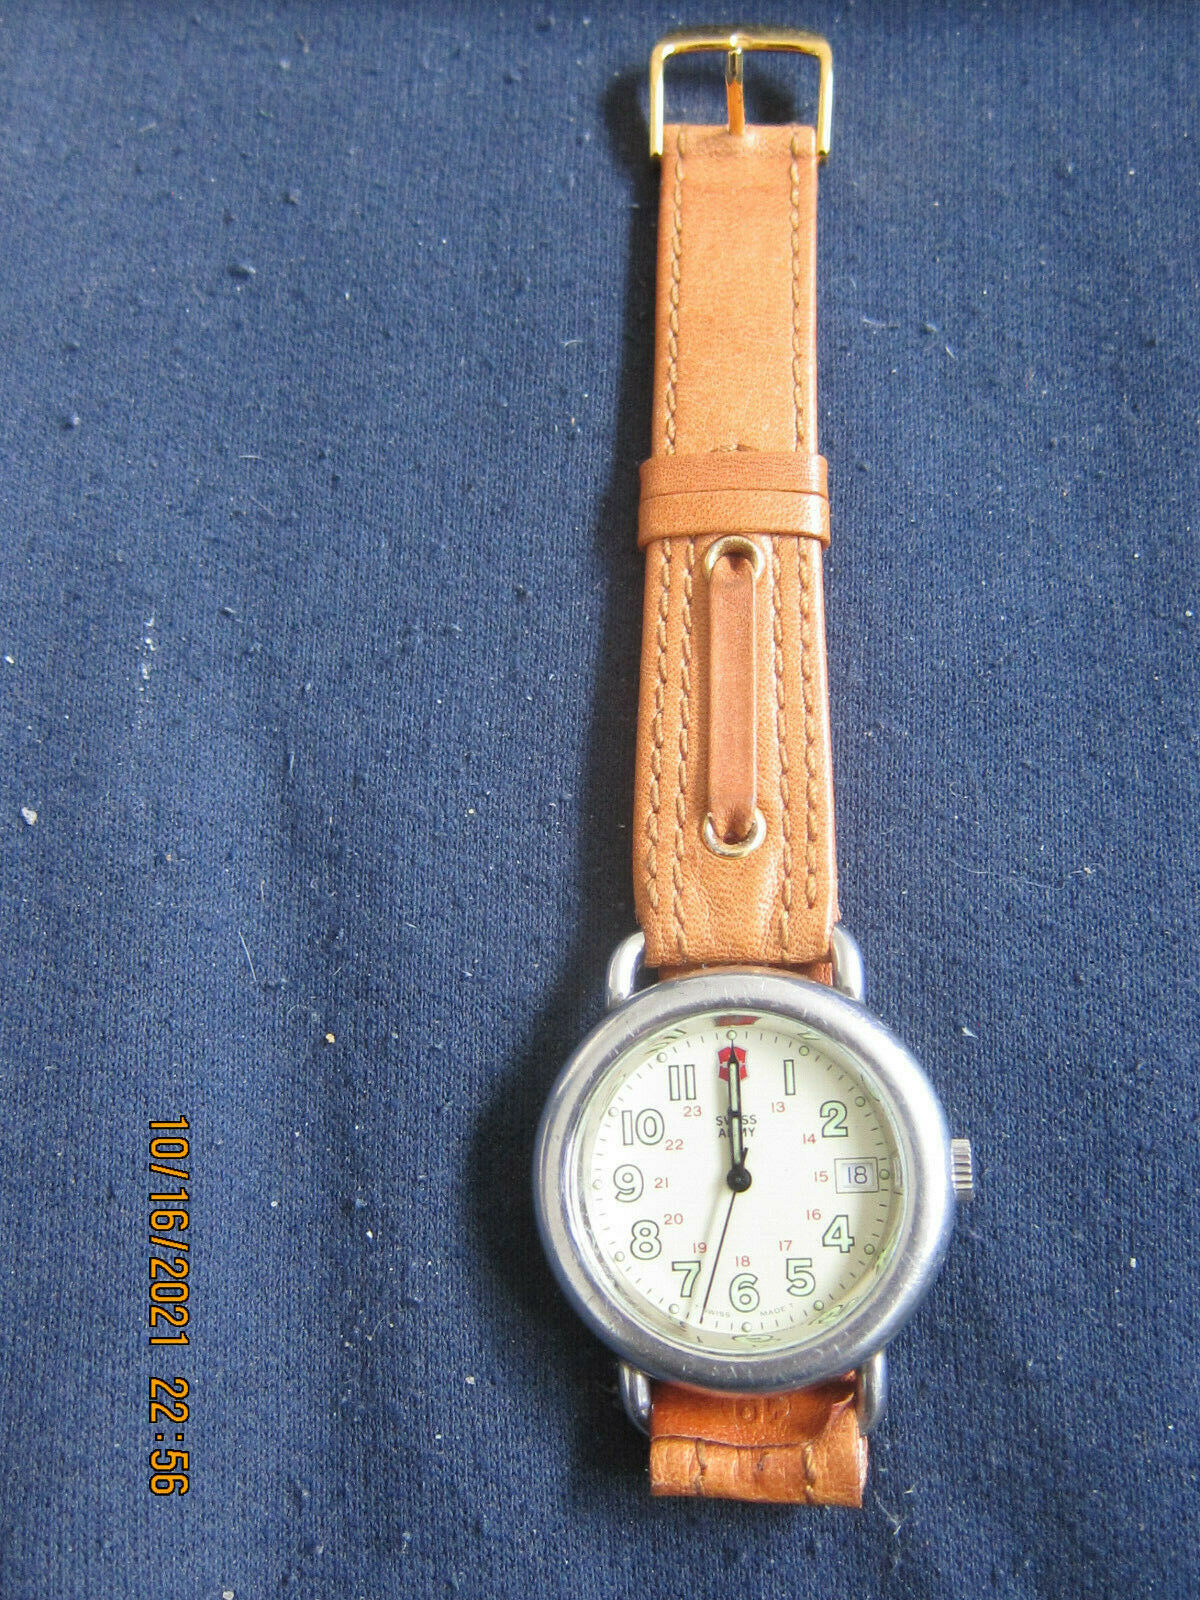 Anglo-Swiss Cavalry Manual Wind 17J Shockresistant Wrist Watch | eBay